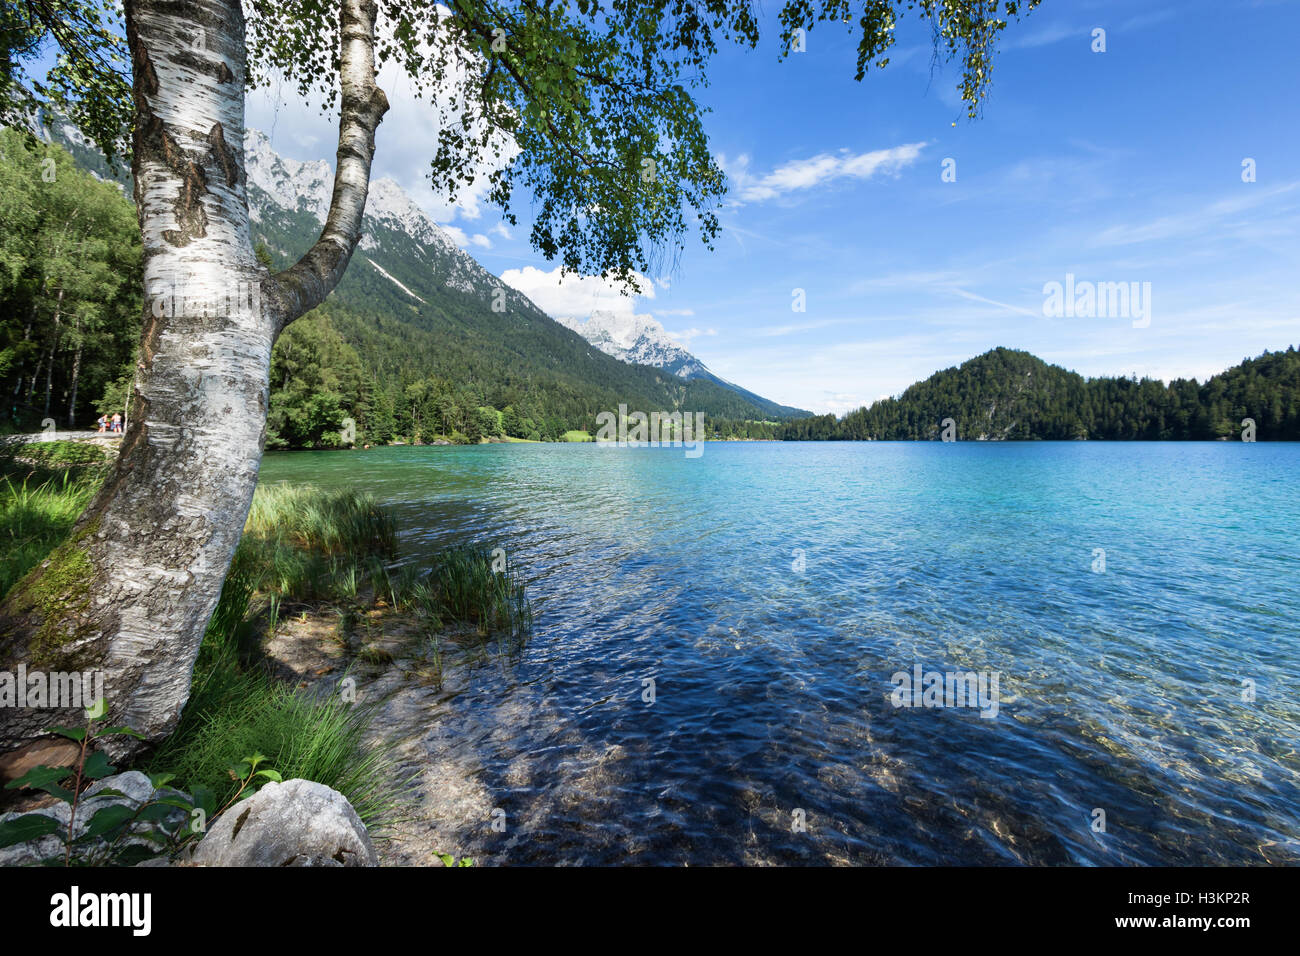 Endroit idéal pour se détendre devant un lac de montagne. L'Autriche, Tyrol, lac Hintersteiner Banque D'Images